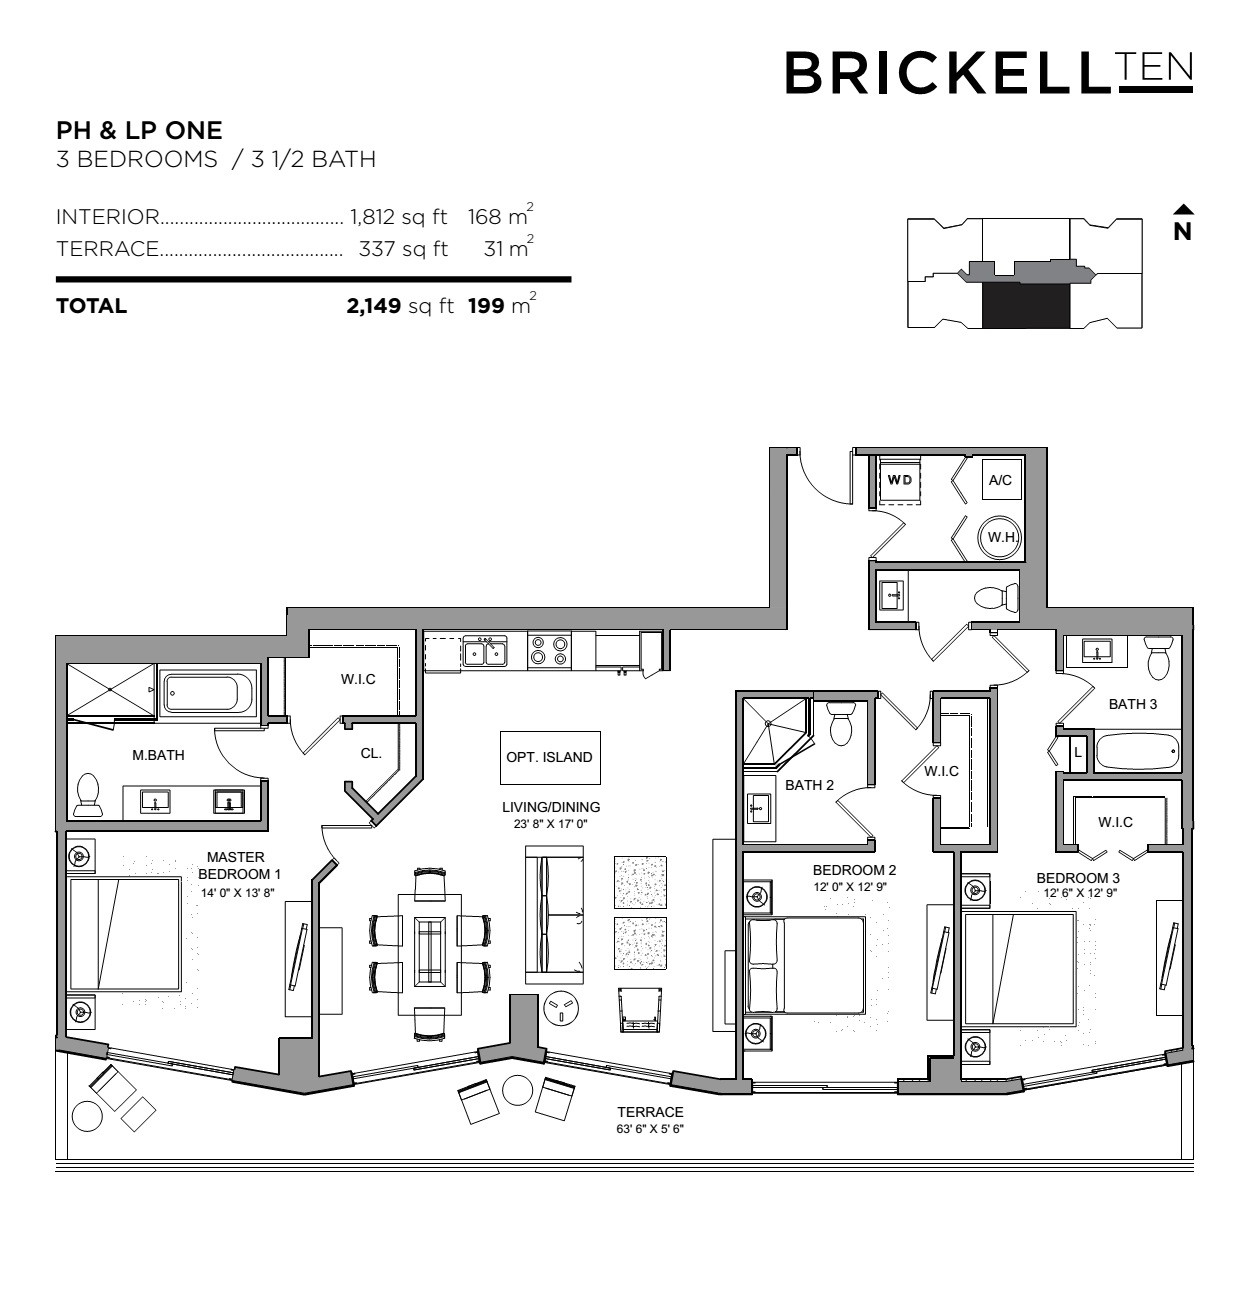 Brickell Ten Penthouse 01